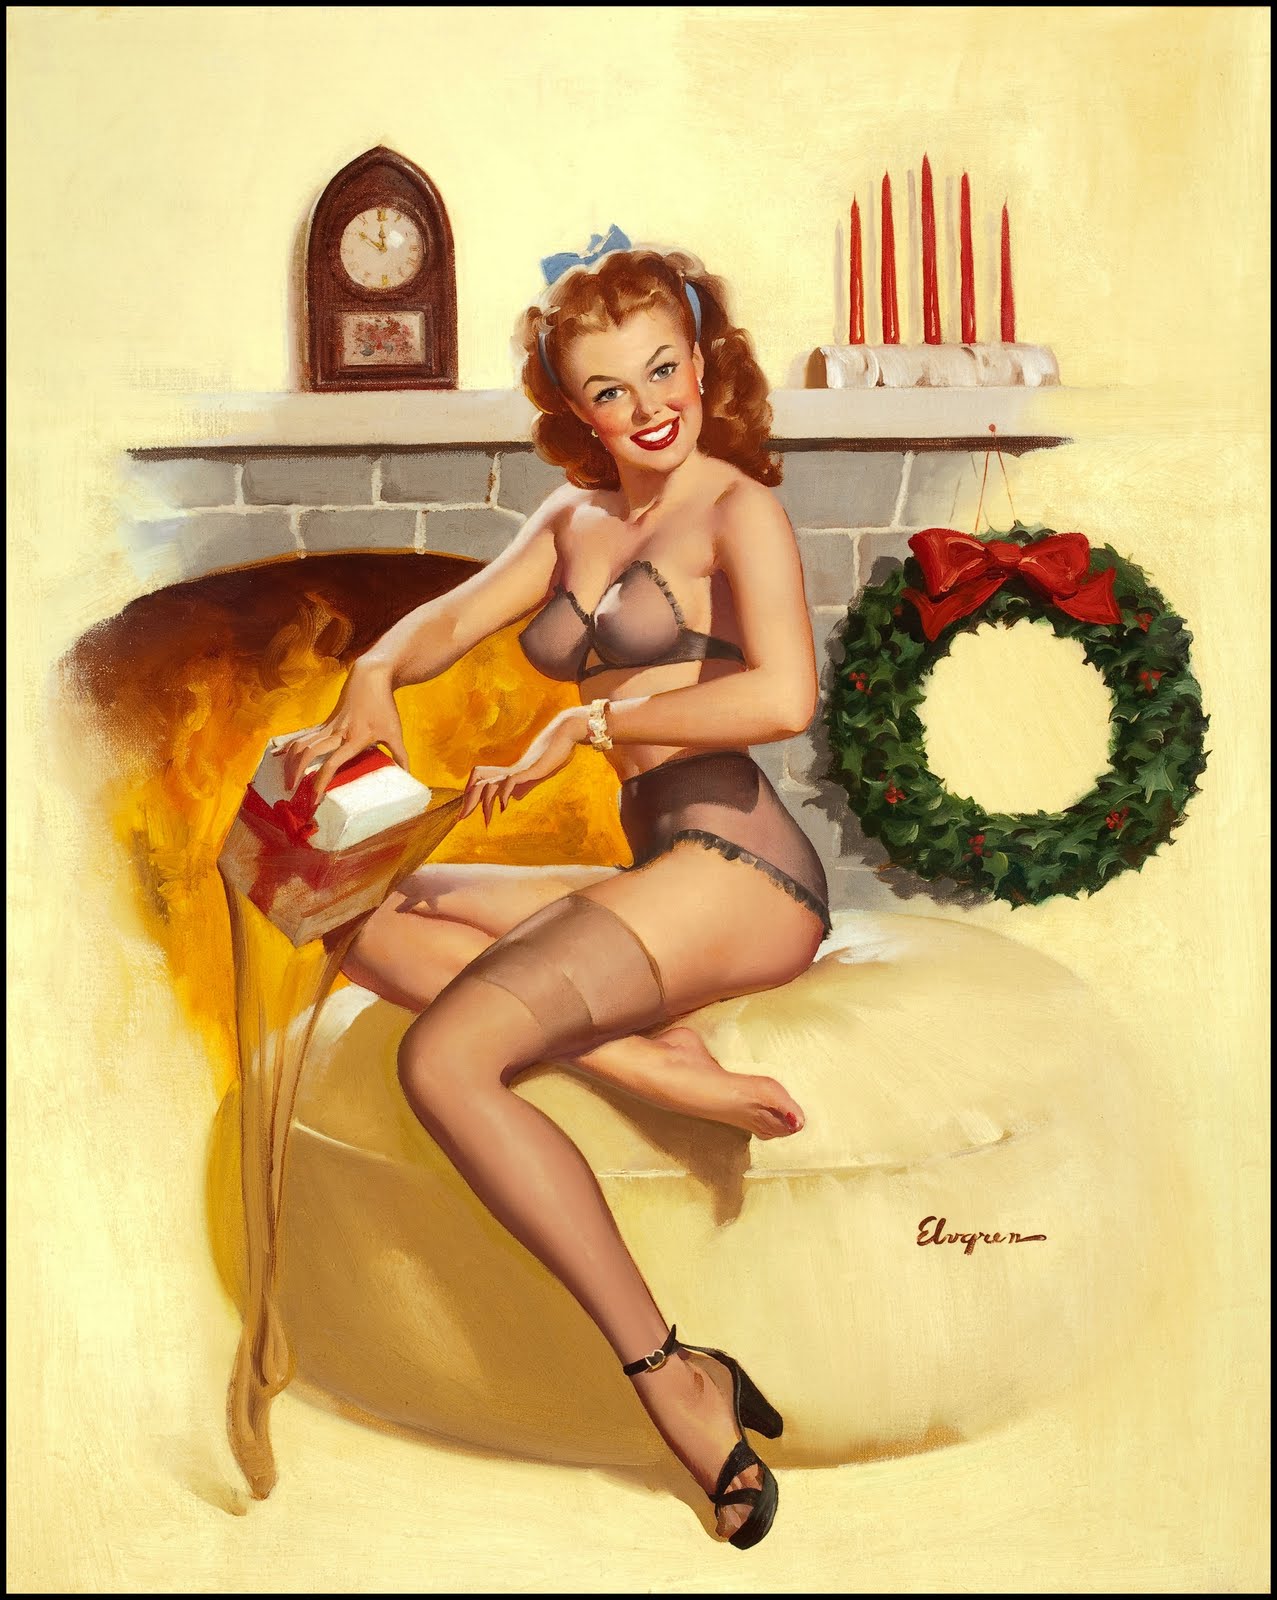 cp-elvgren-fireplace-1940s.jpg